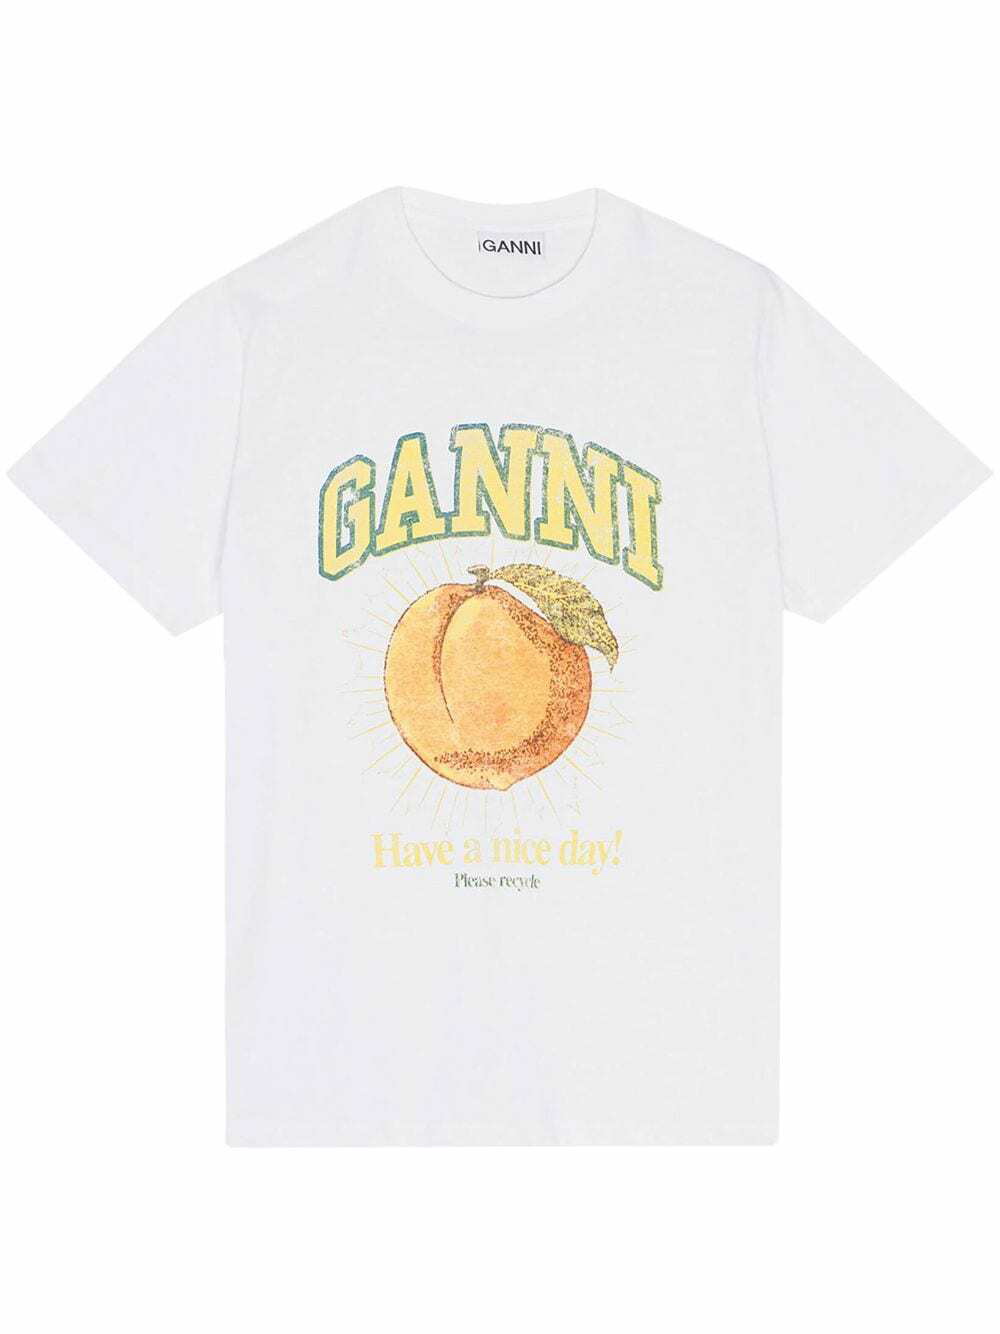 GANNI - Peach Print Organic Cotton T-shirt GANNI